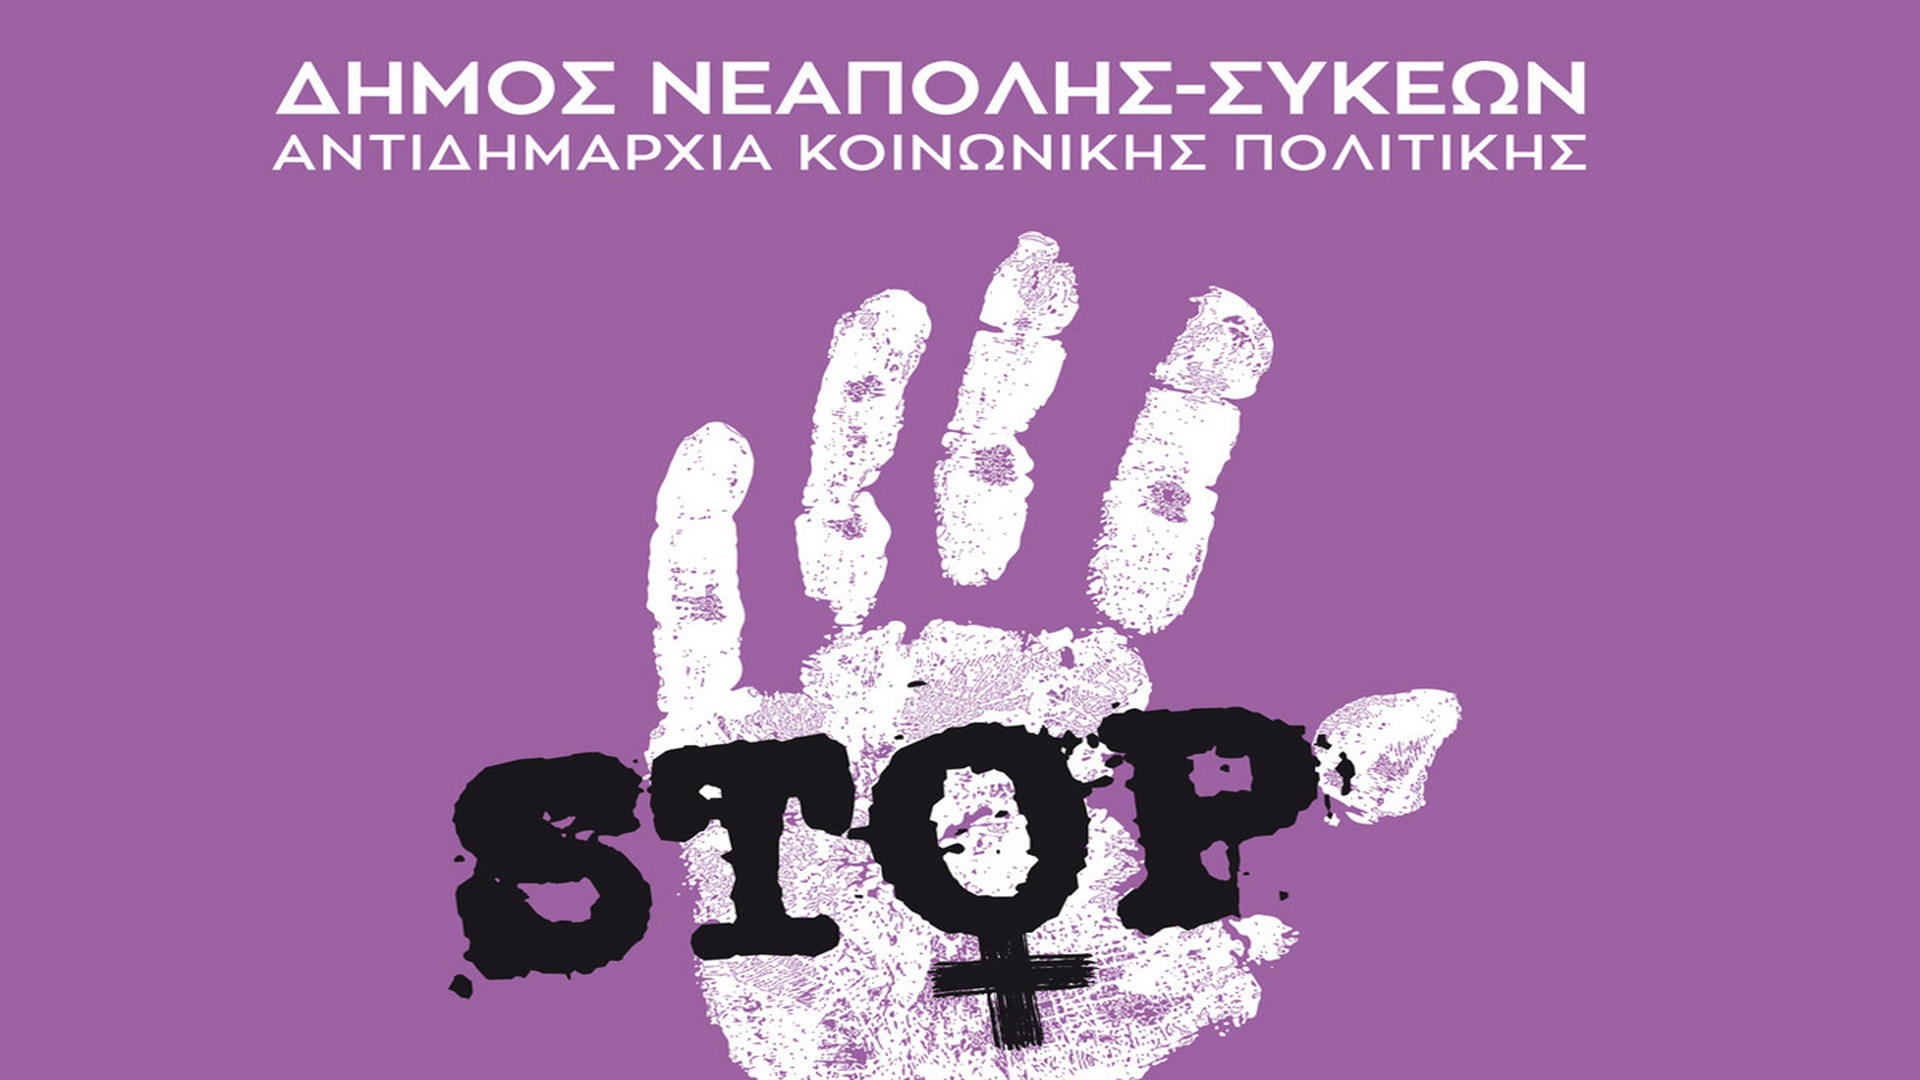 Σήμερα η πρώτη συνεδρίαση της Επιτροπής Ισότητας του δήμου Νεάπολης-Συκεών, την Πέμπτη η εκδήλωση για τη εξάλειψη της βίας κατά των γυναικών